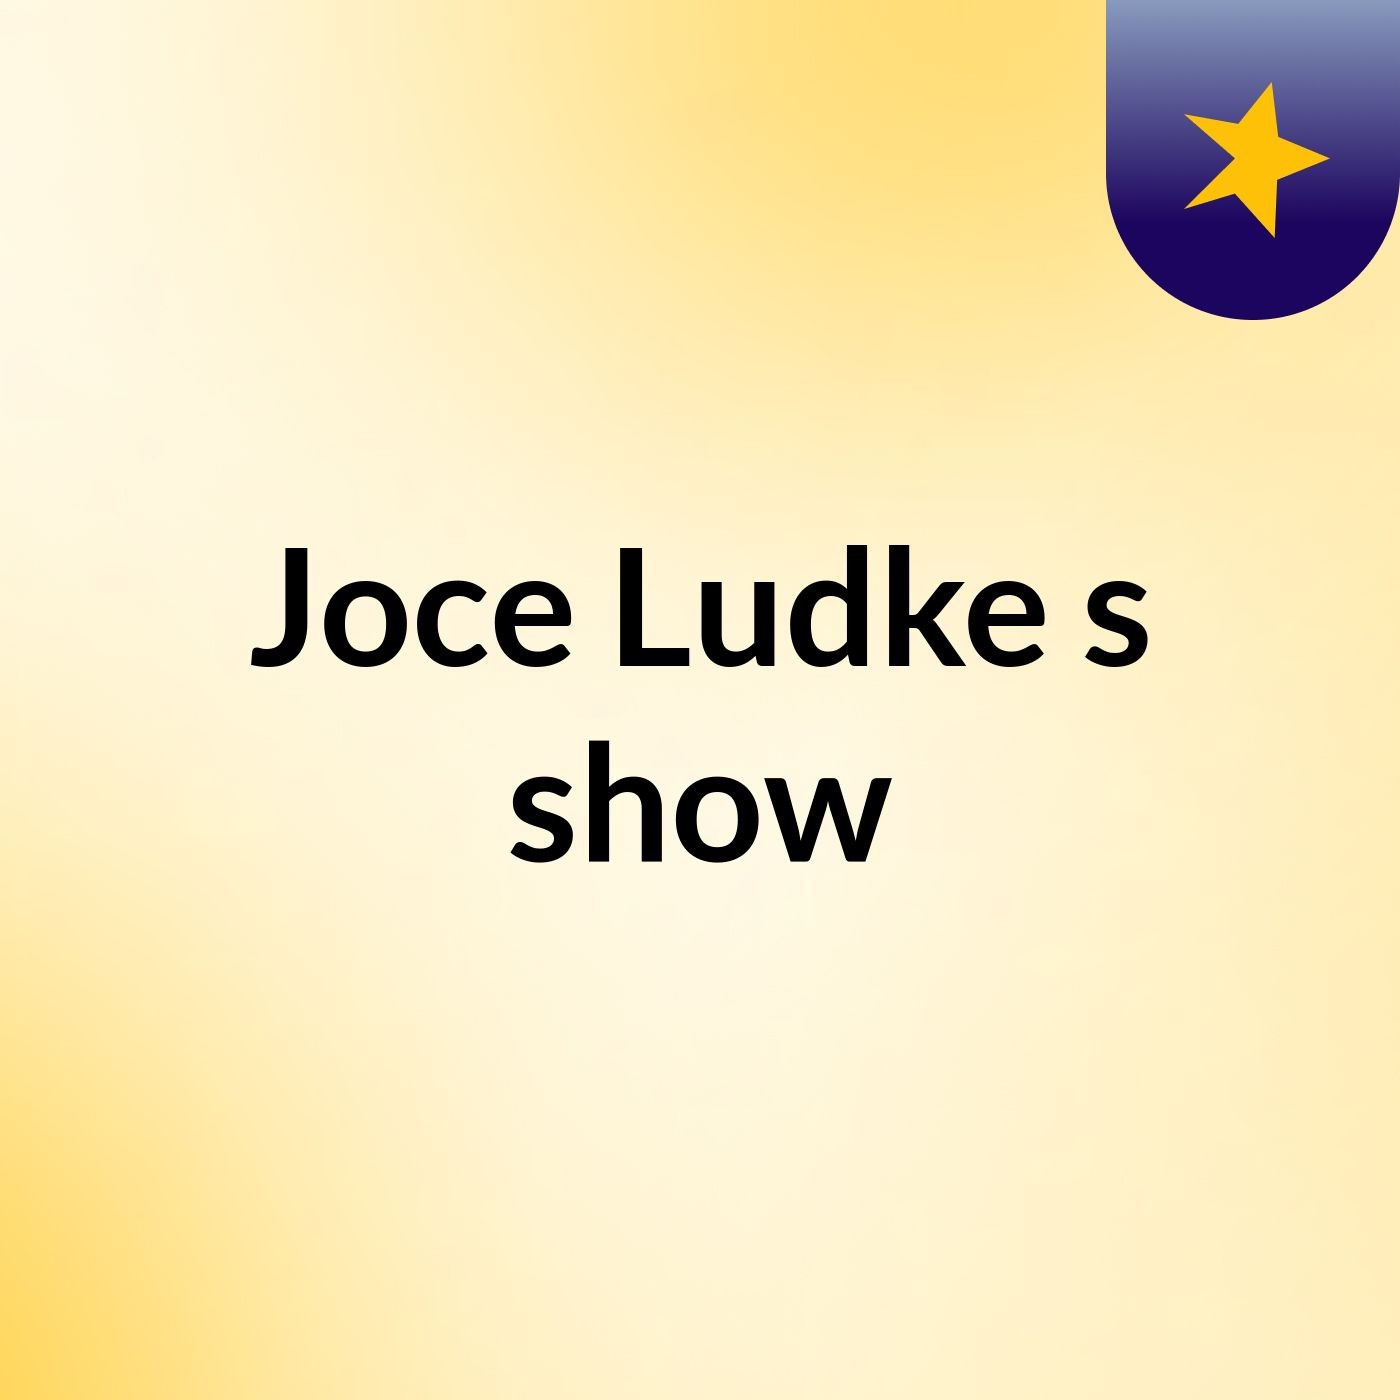 Joce Ludke's show